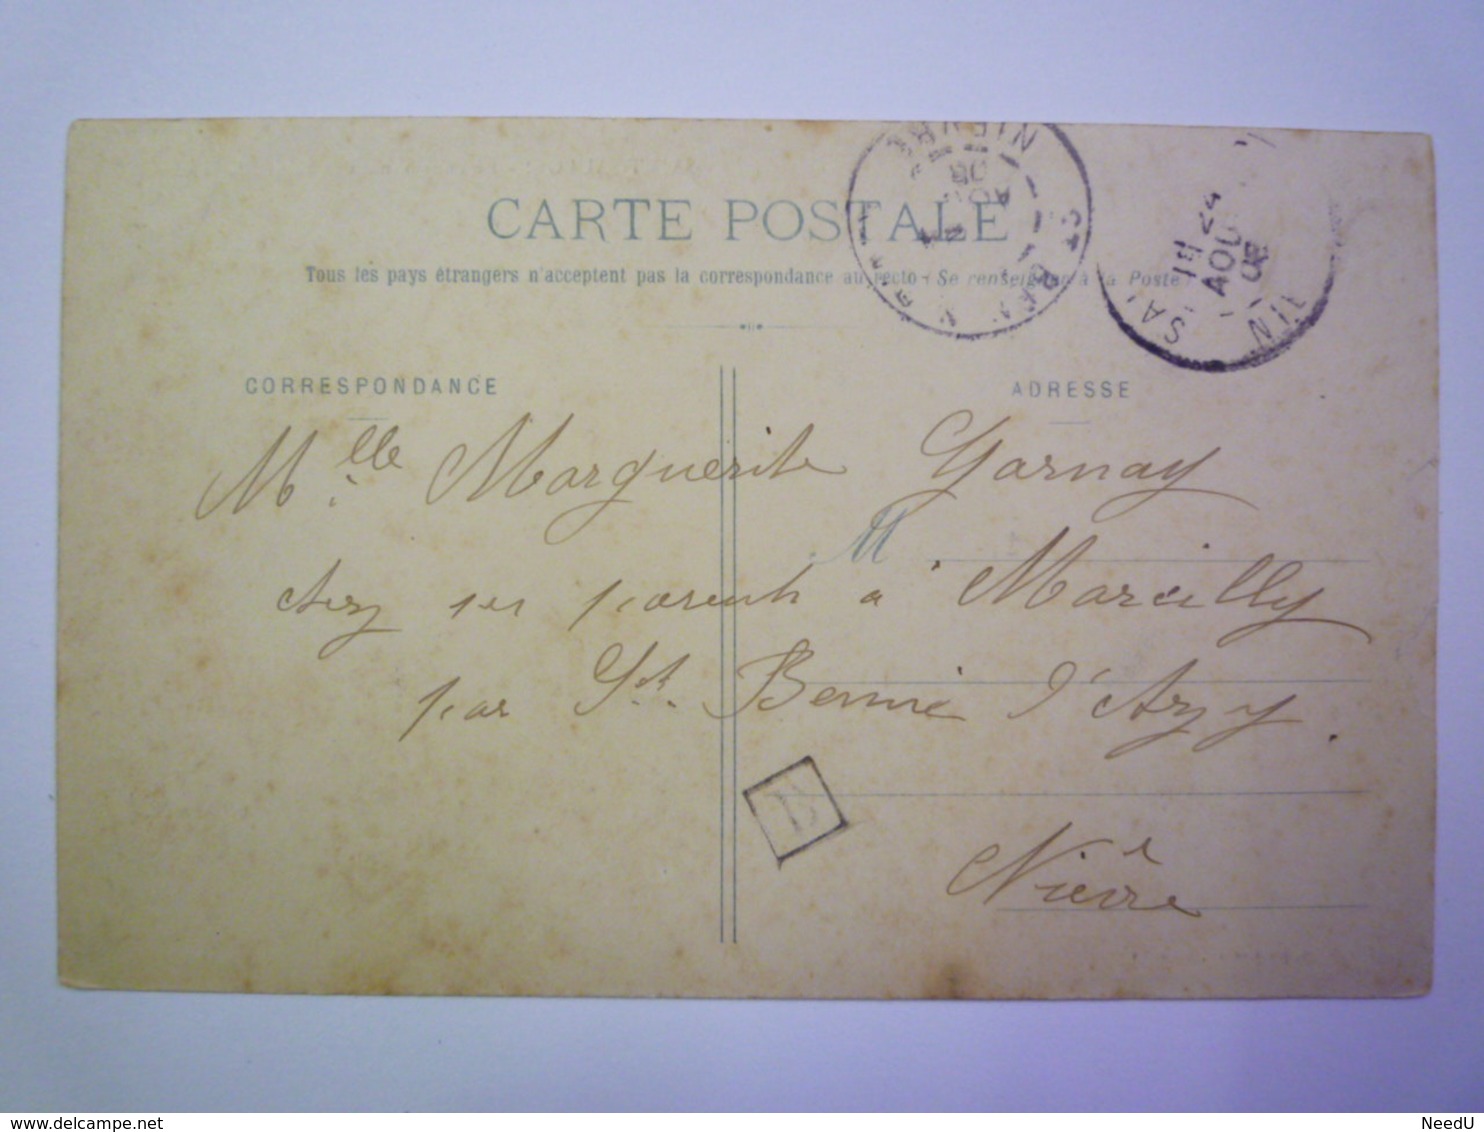 GP 2019 - 2089  SAINT-SAULGE  (Nièvre)  :  Le Pensionnat Des Soeurs De La Charité   1908   XXX - Other & Unclassified